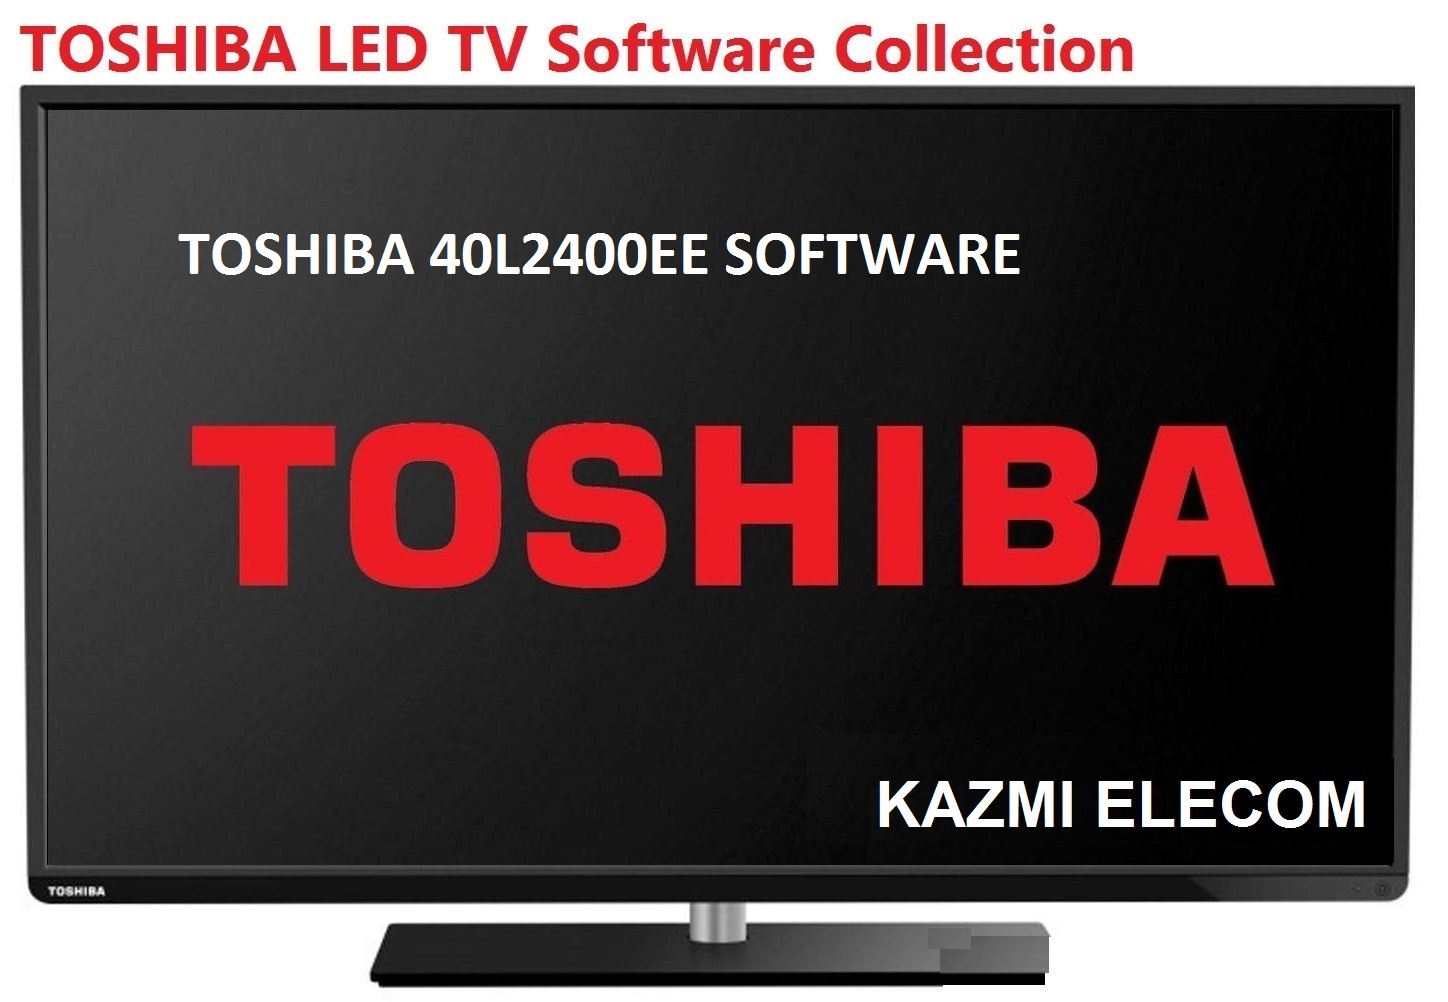 Toshiba 40L2400Ee